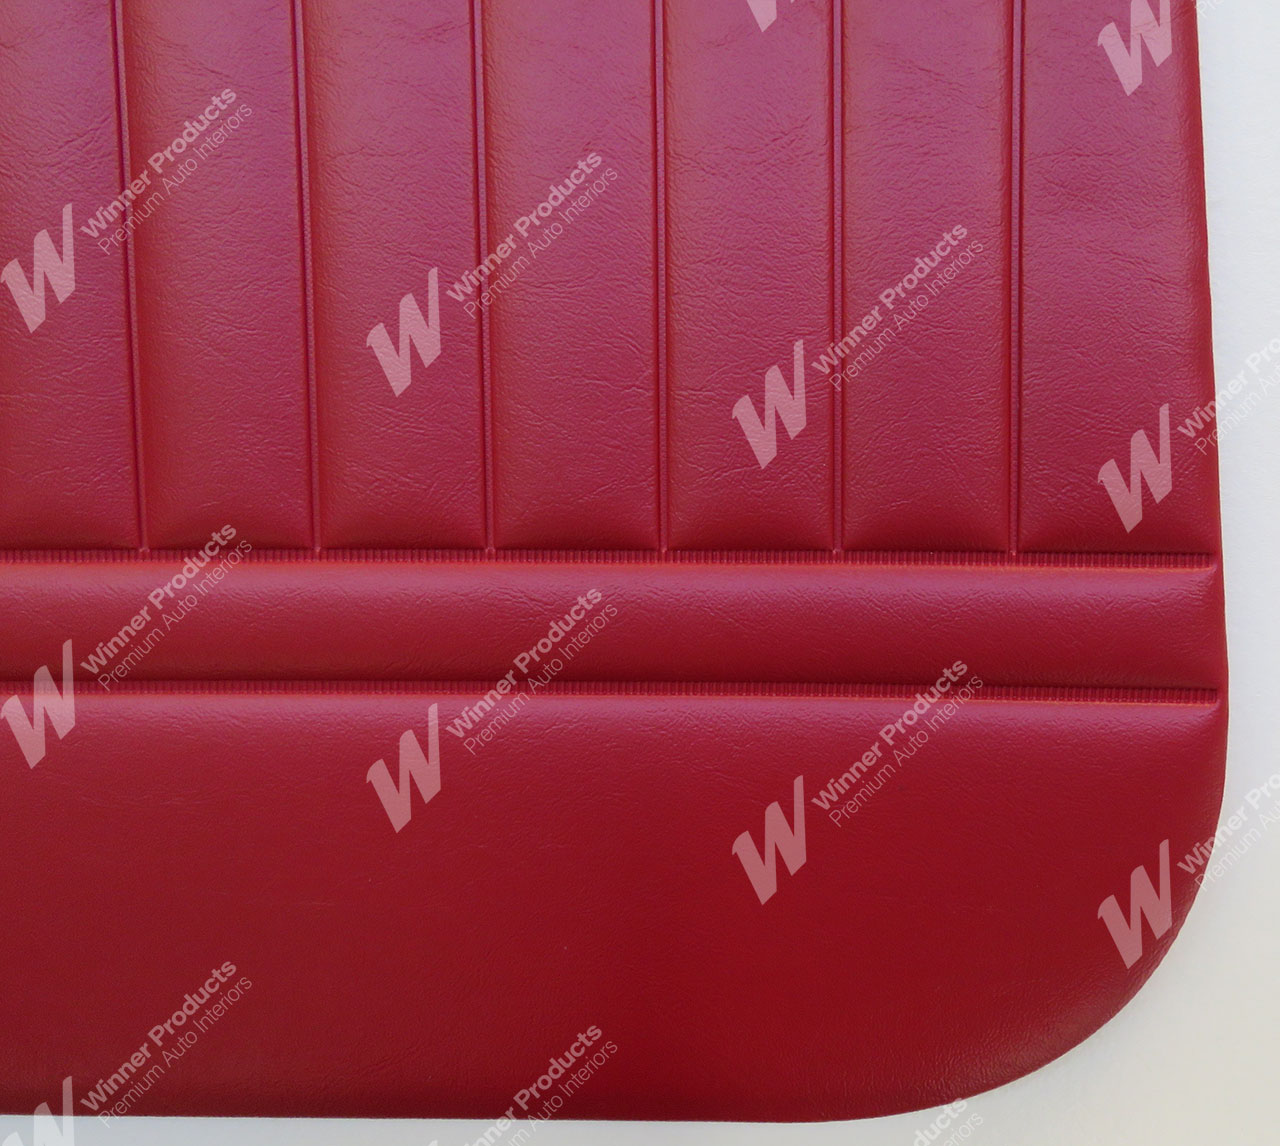 Holden Standard HR Standard Panel Van E73 Mephisto Red Door Trims (Image 3 of 3)